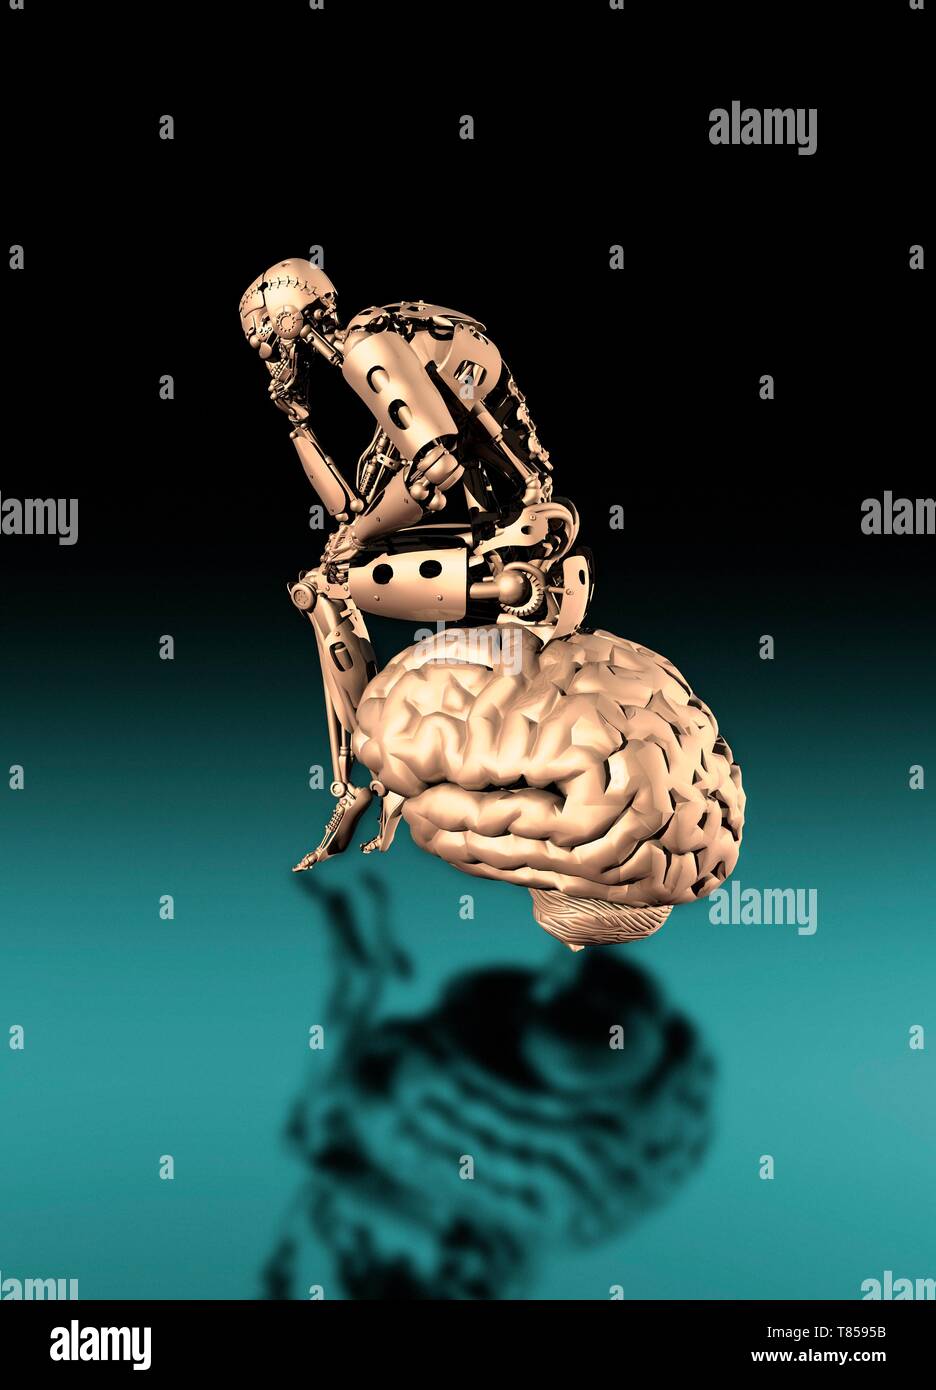 Robot on brain, illustration Stock Photo